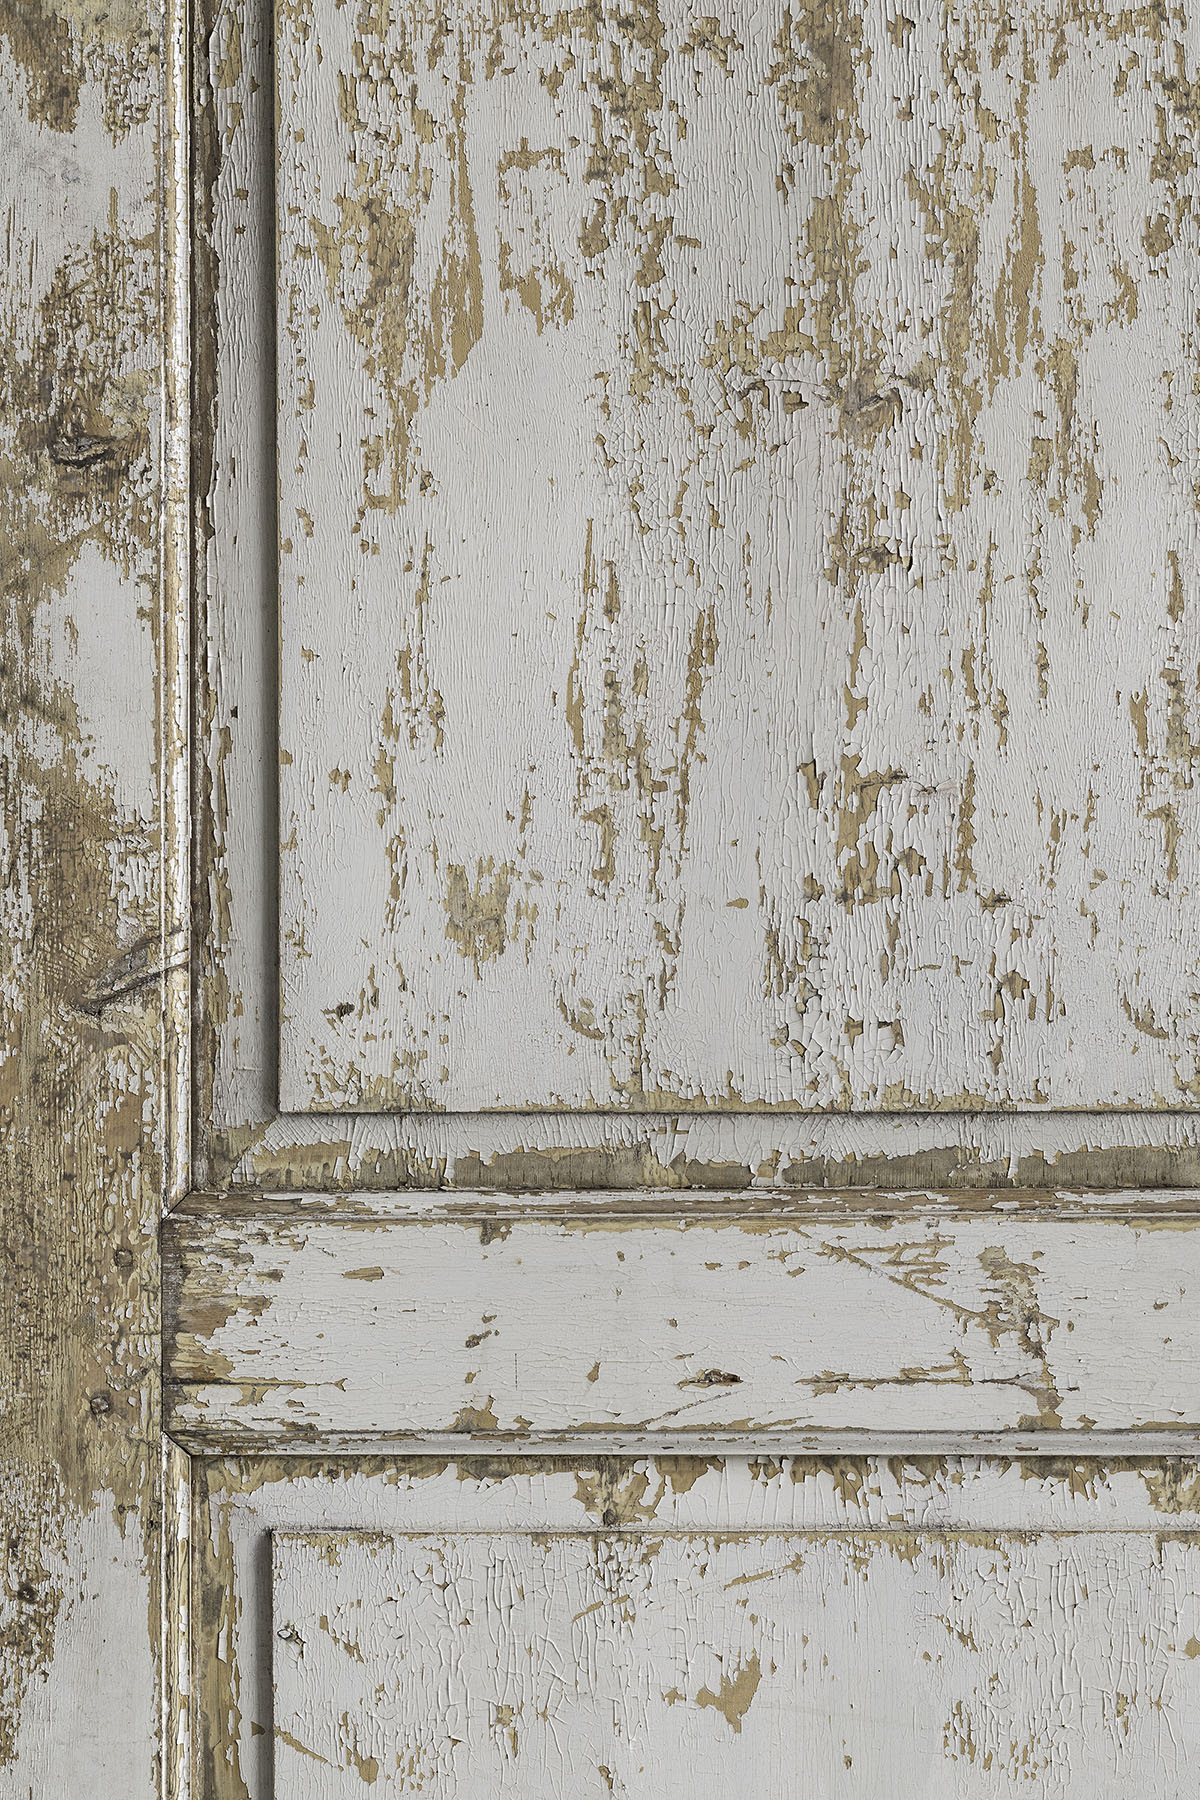 Witte deur backdrop voor food en product styling & fotografie